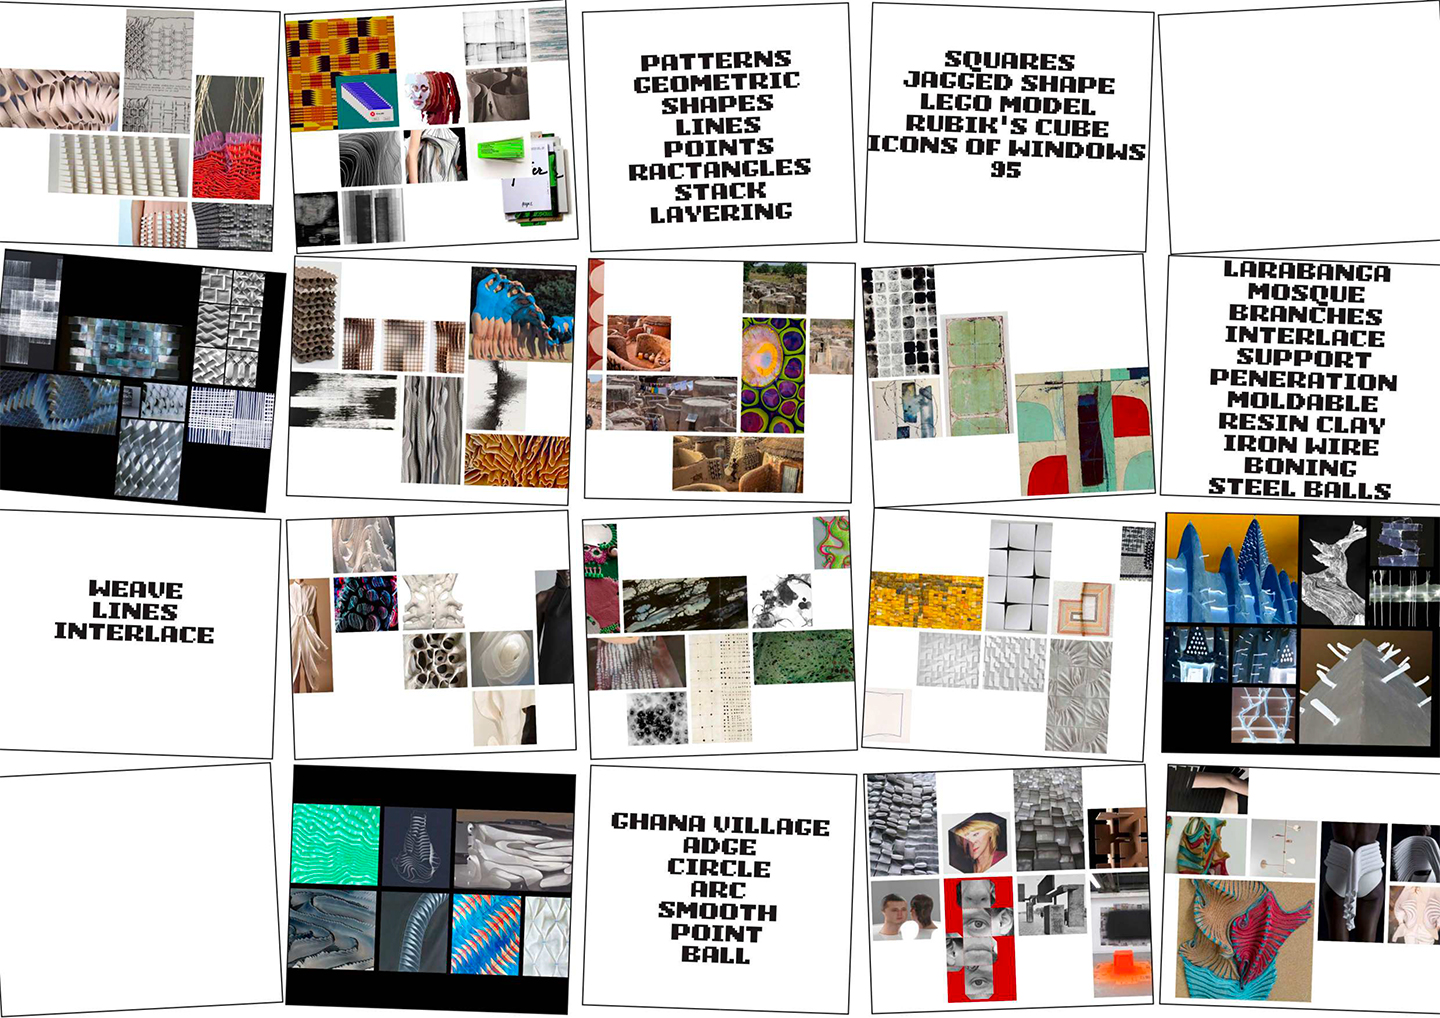 Kente Cloth research from Weihuai Zhang's portfolio